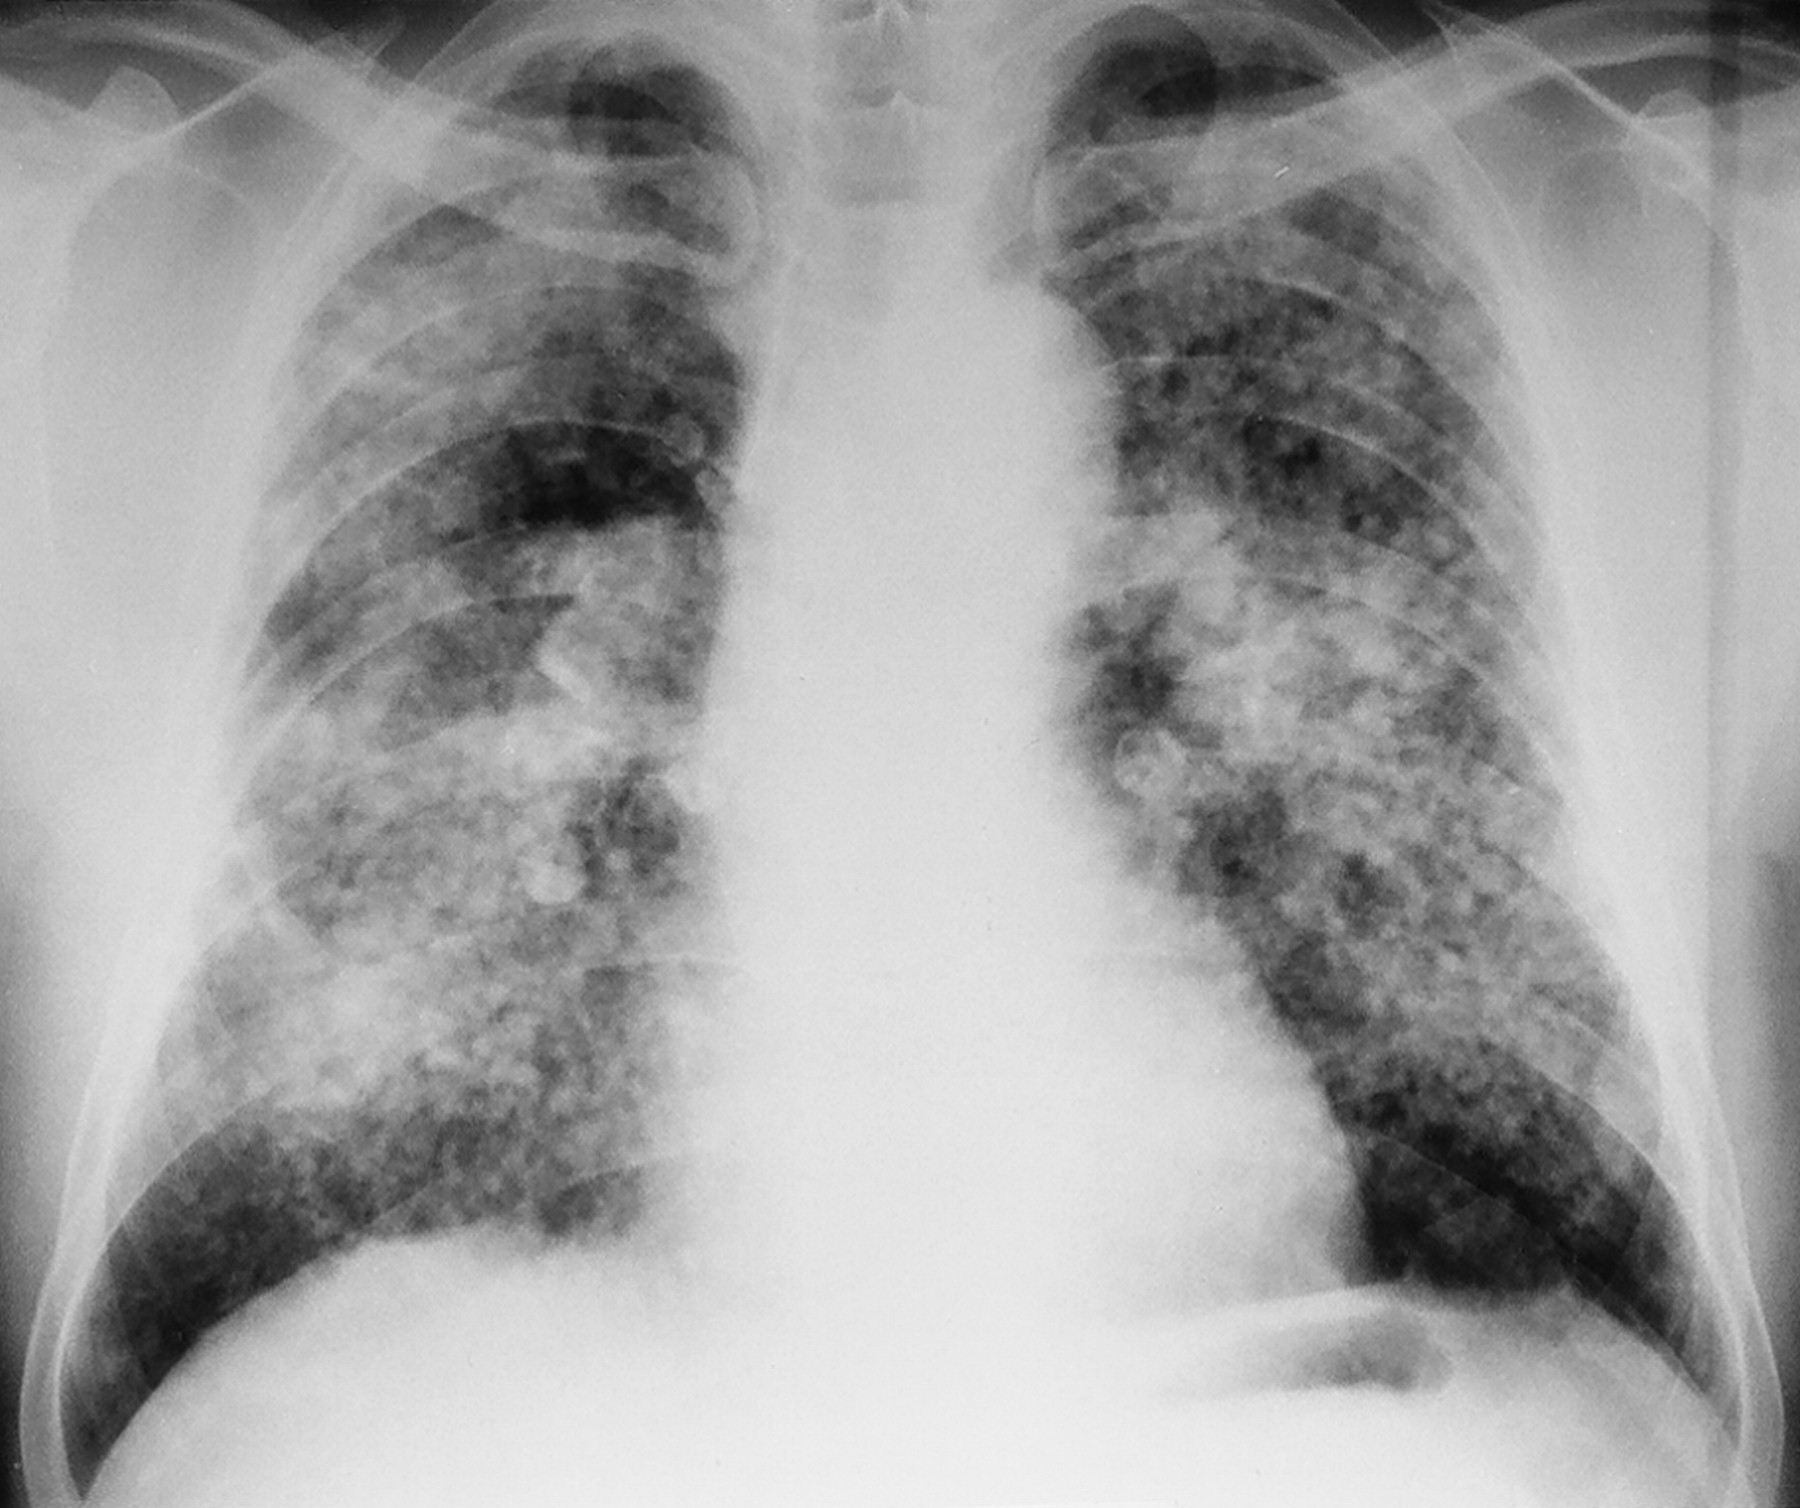 Пневмофиброз легких: что это такое и как его лечить pulmono.ru
пневмофиброз легких: что это такое и как его лечить